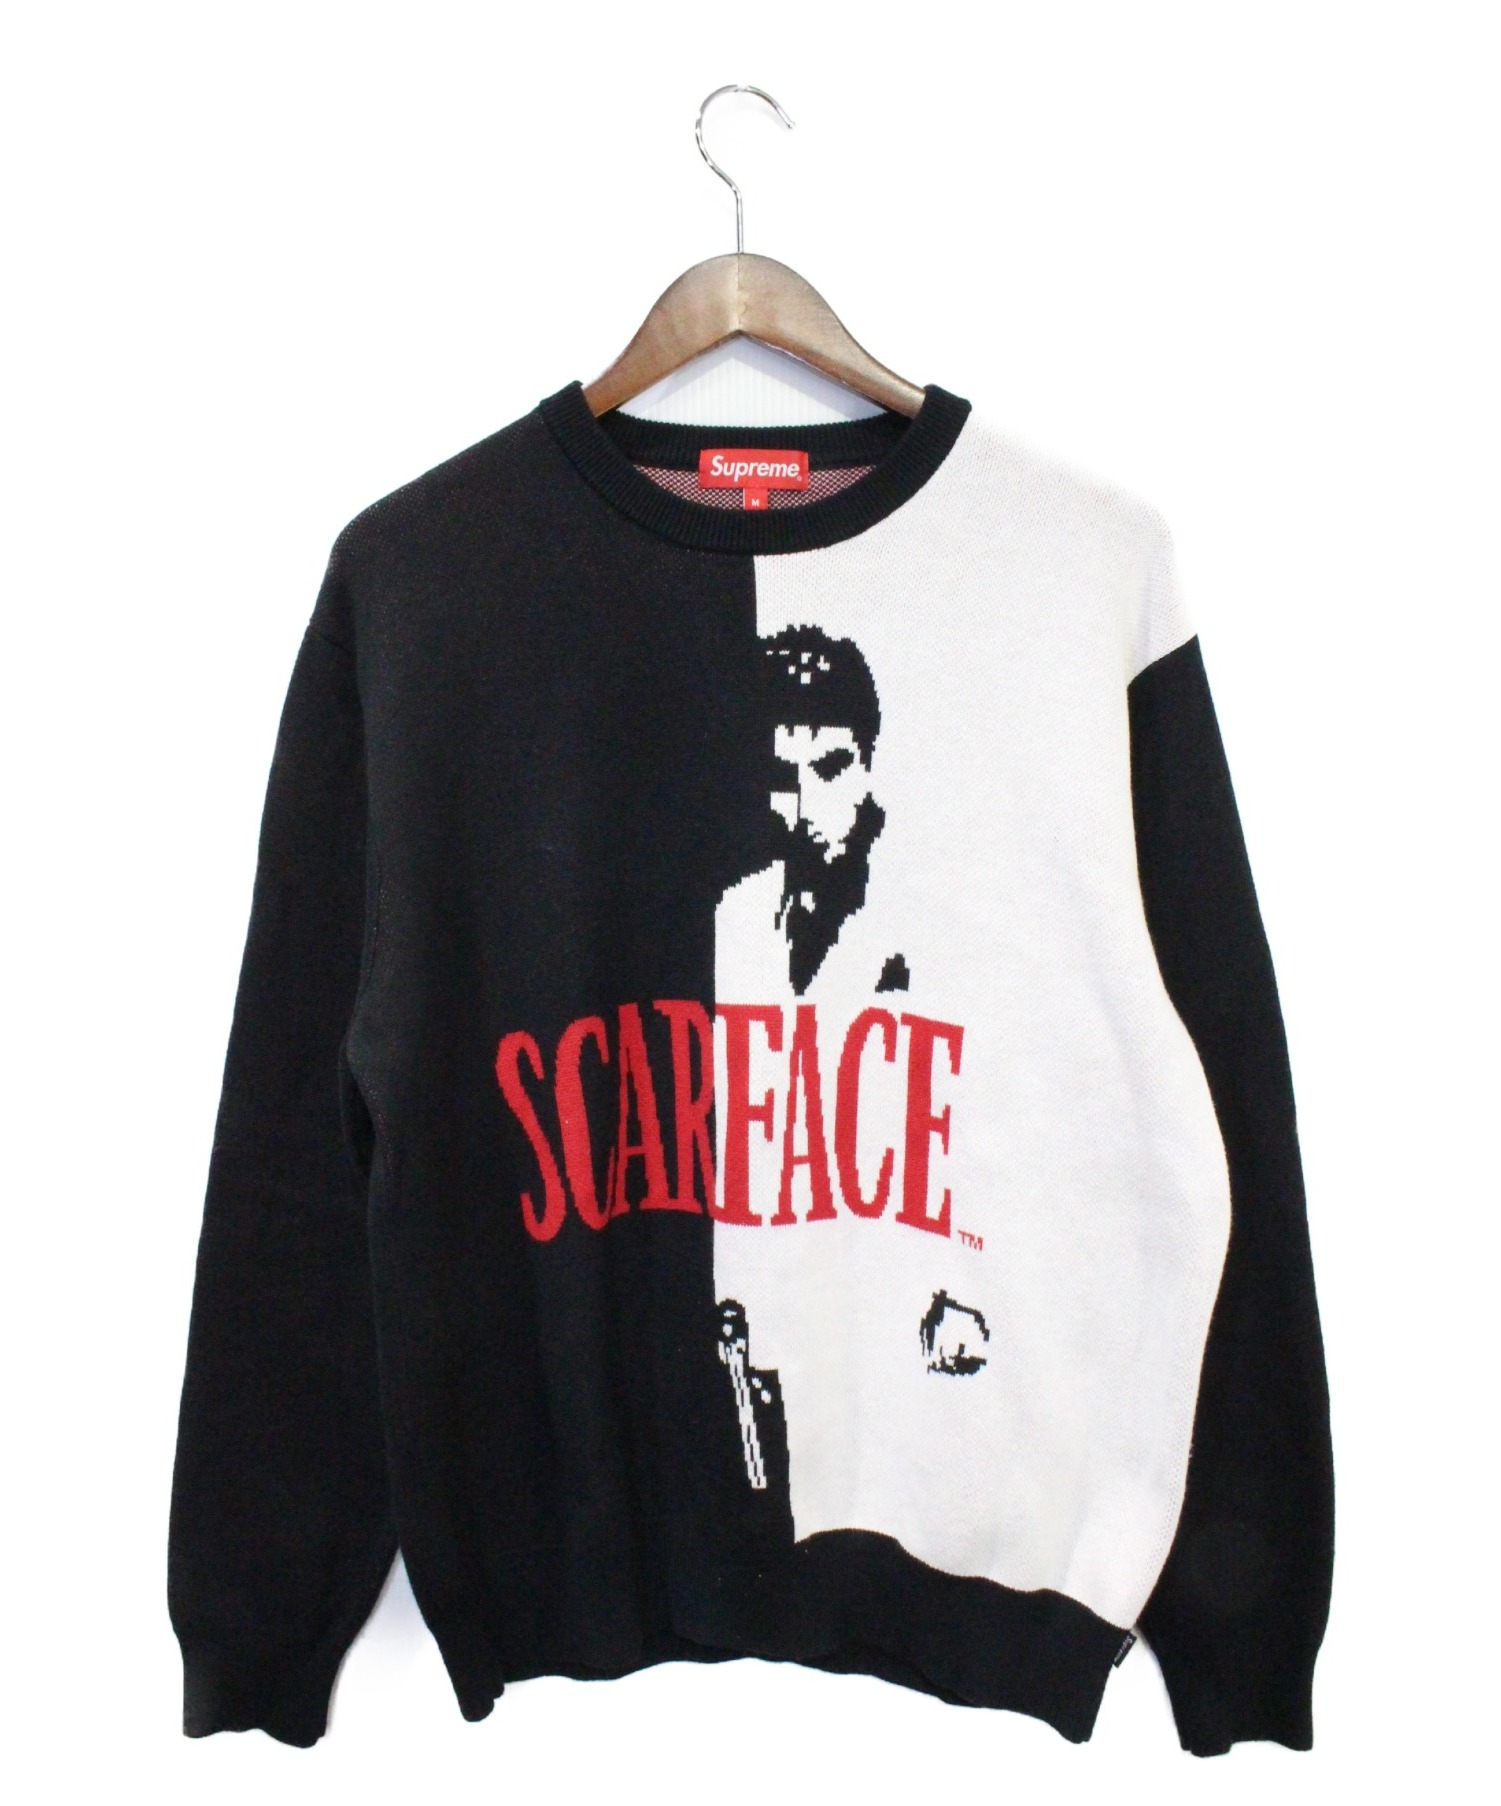 Supreme (シュプリーム) Scarface Sweater ホワイト×ブラック サイズ:M